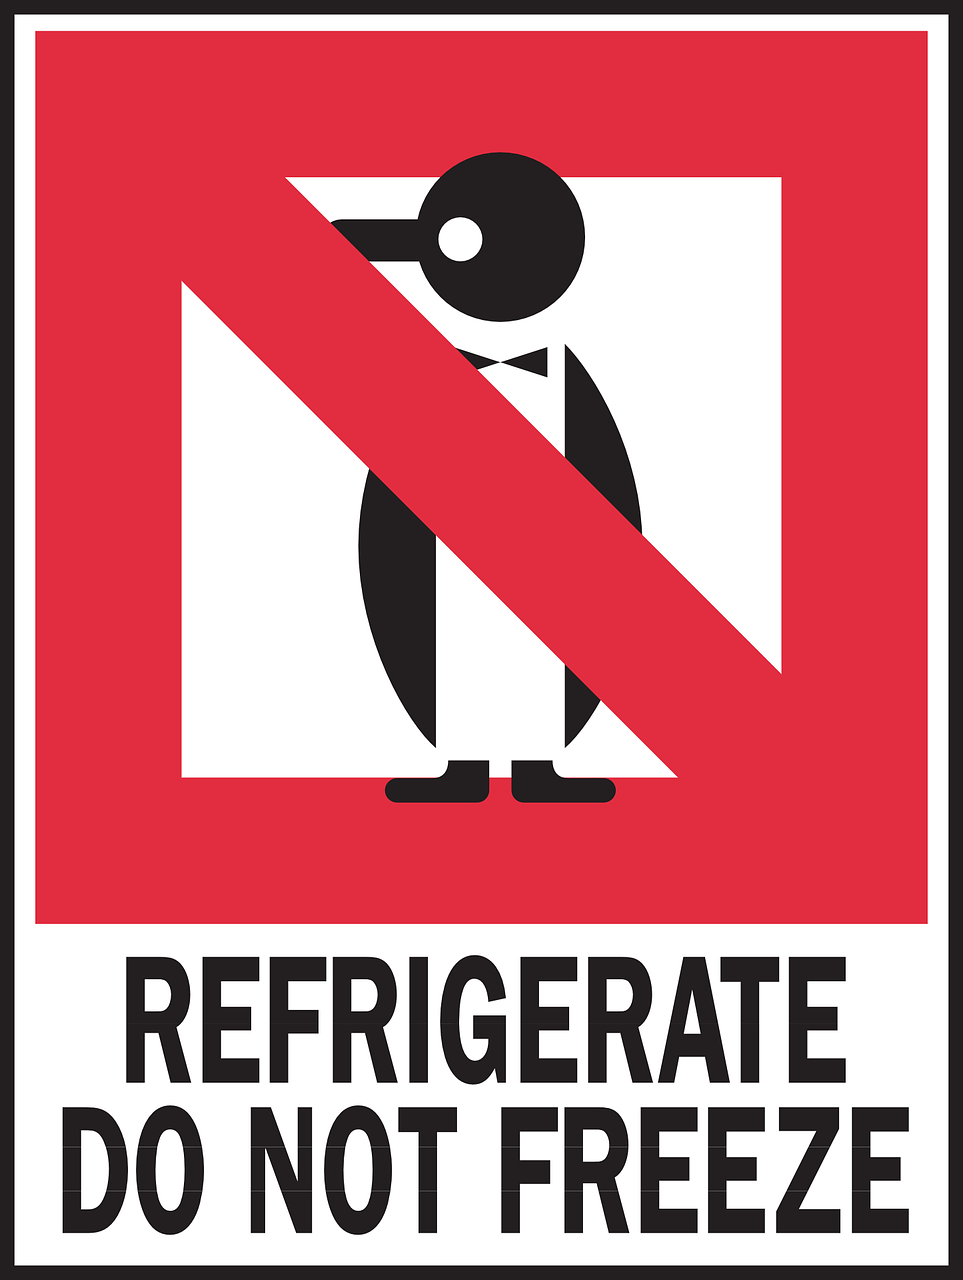 penguin warning packaging free photo